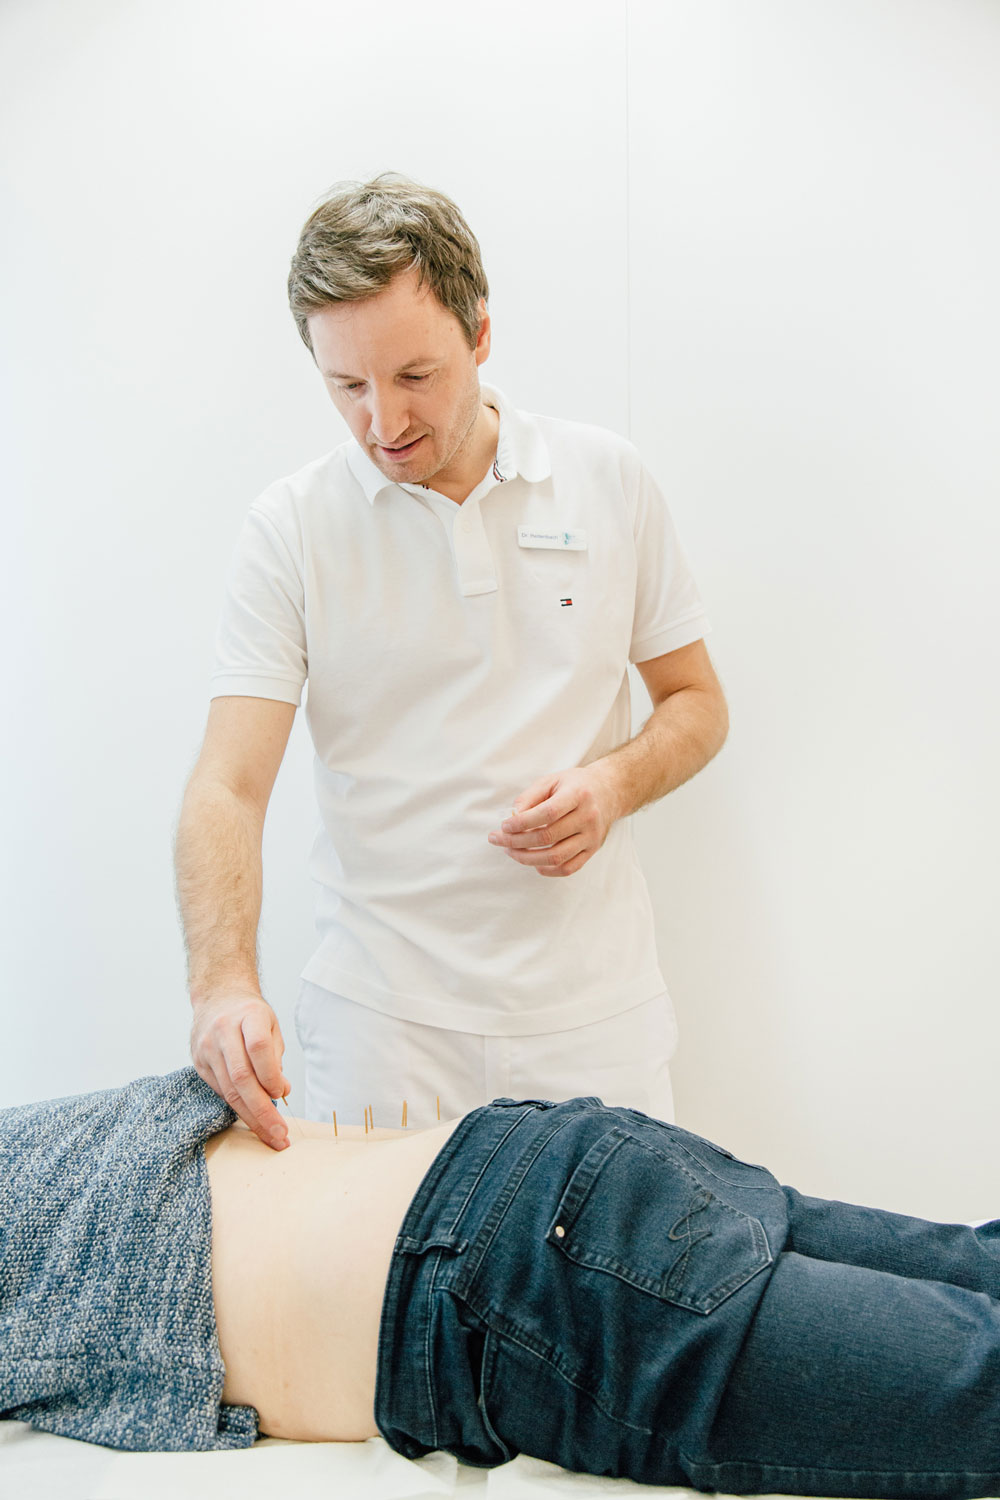 Akupunktur Bensberg - Dr. Reitenbach setzt feine Nadeln in Rücken von Patientin